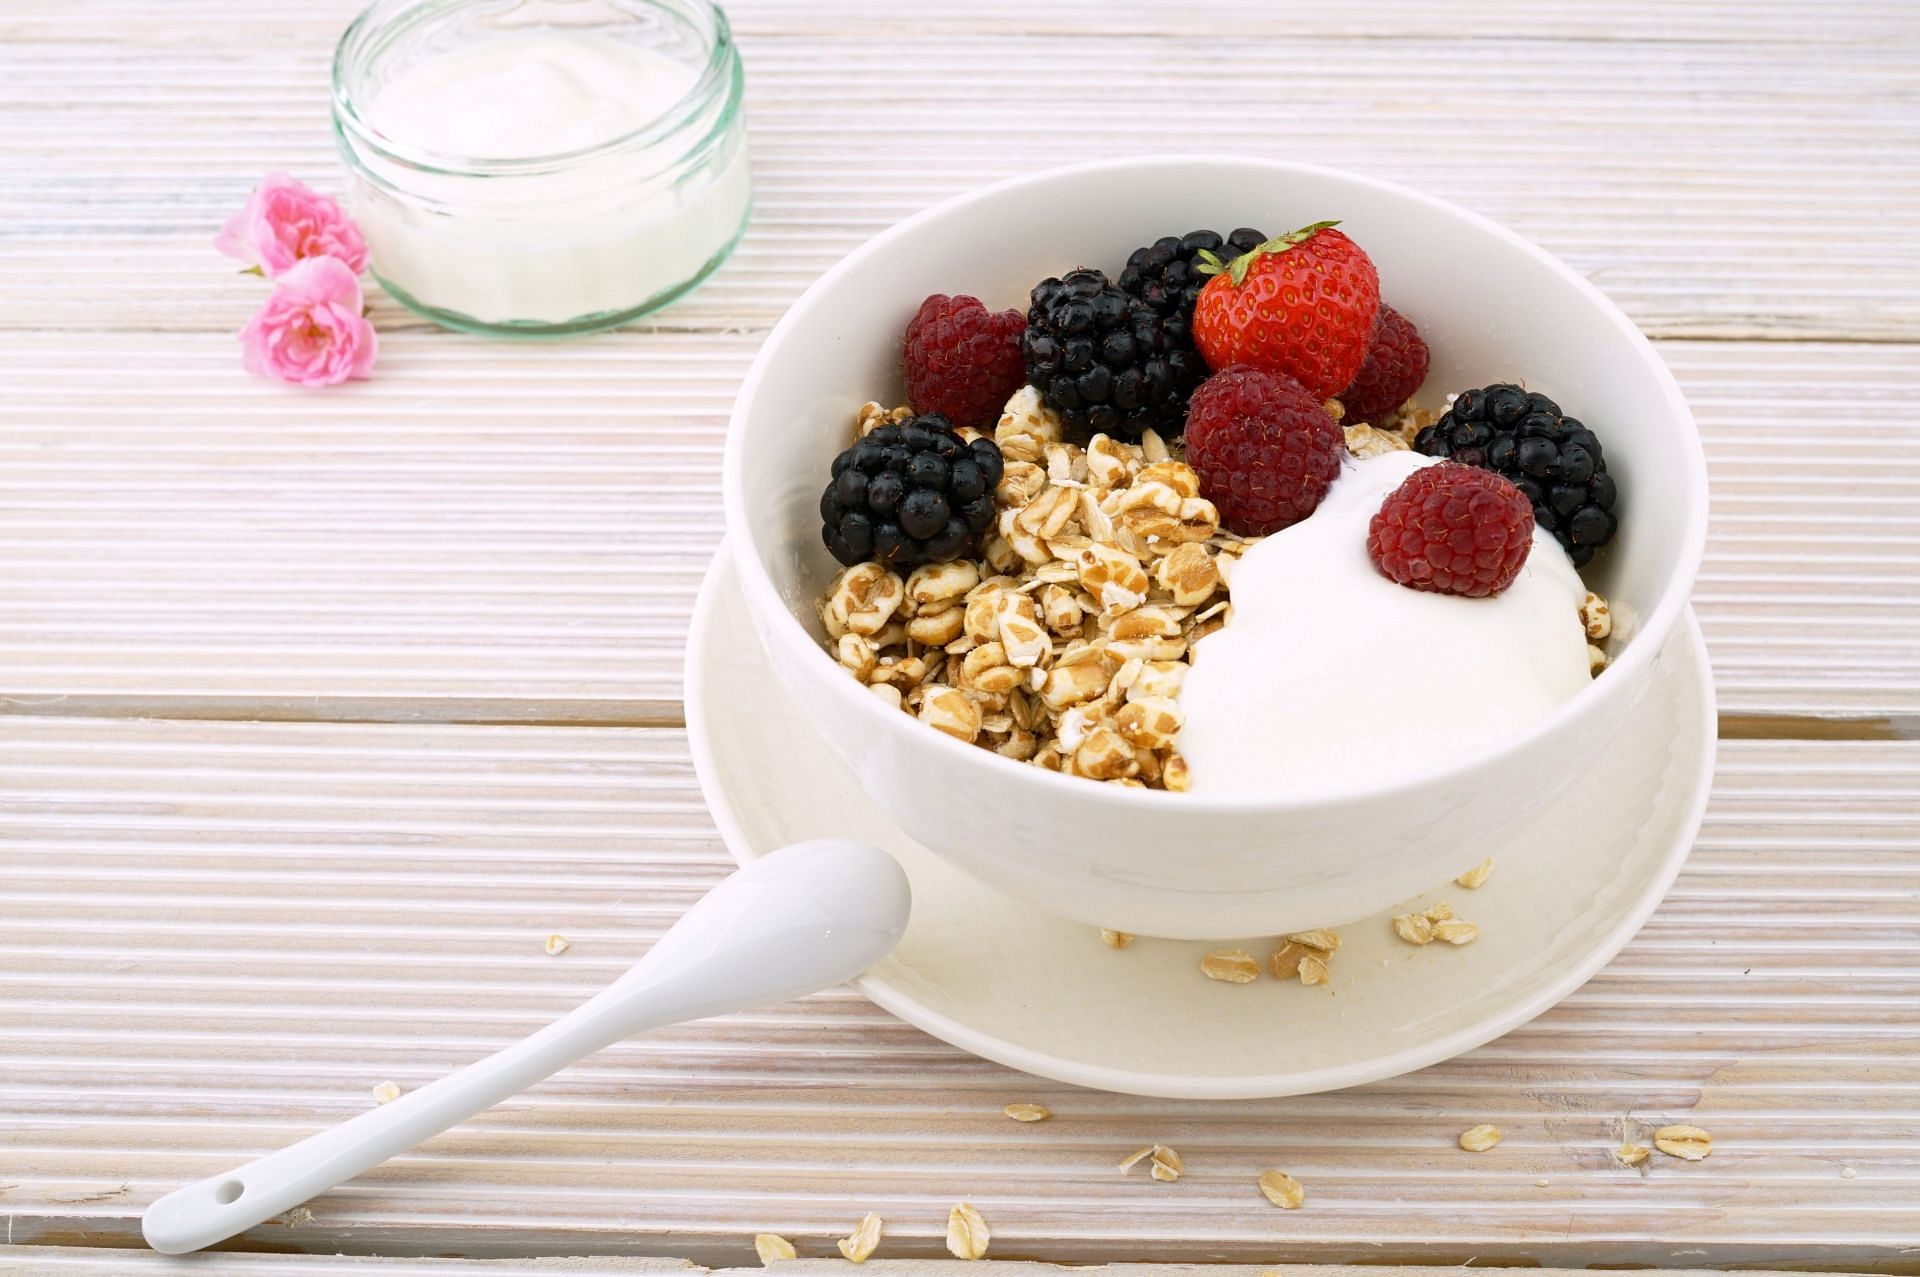 Yogurt with berries (Image via Pexels)